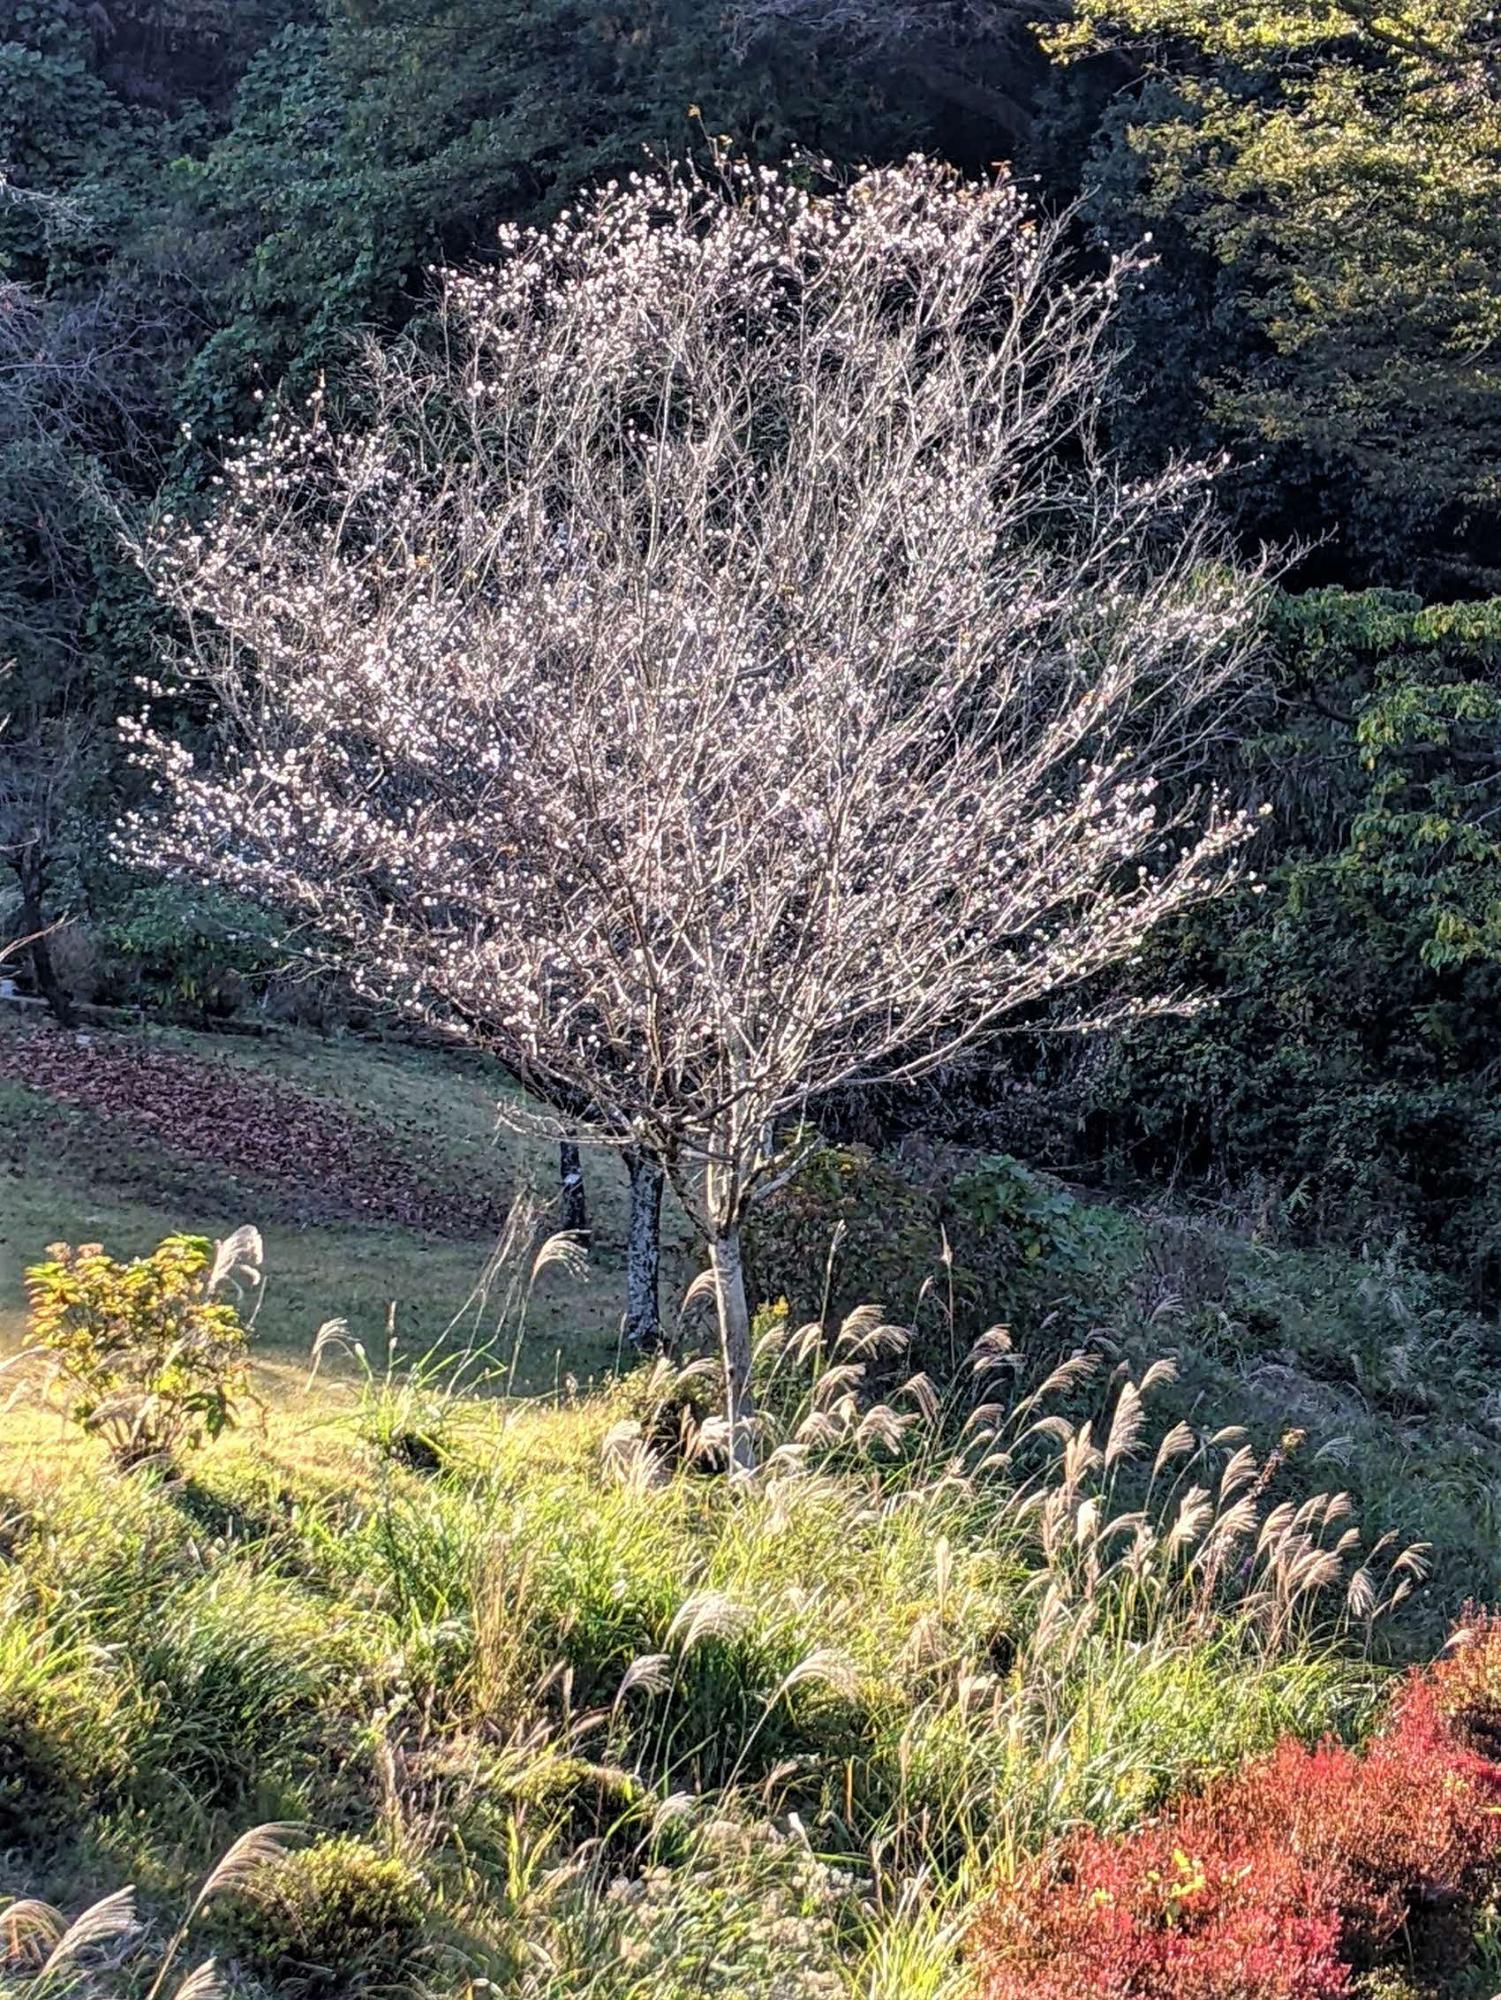 原っぱで手前にススキ、奥に桜の木が植えられており、それらが柔らかな光に照らされている様子